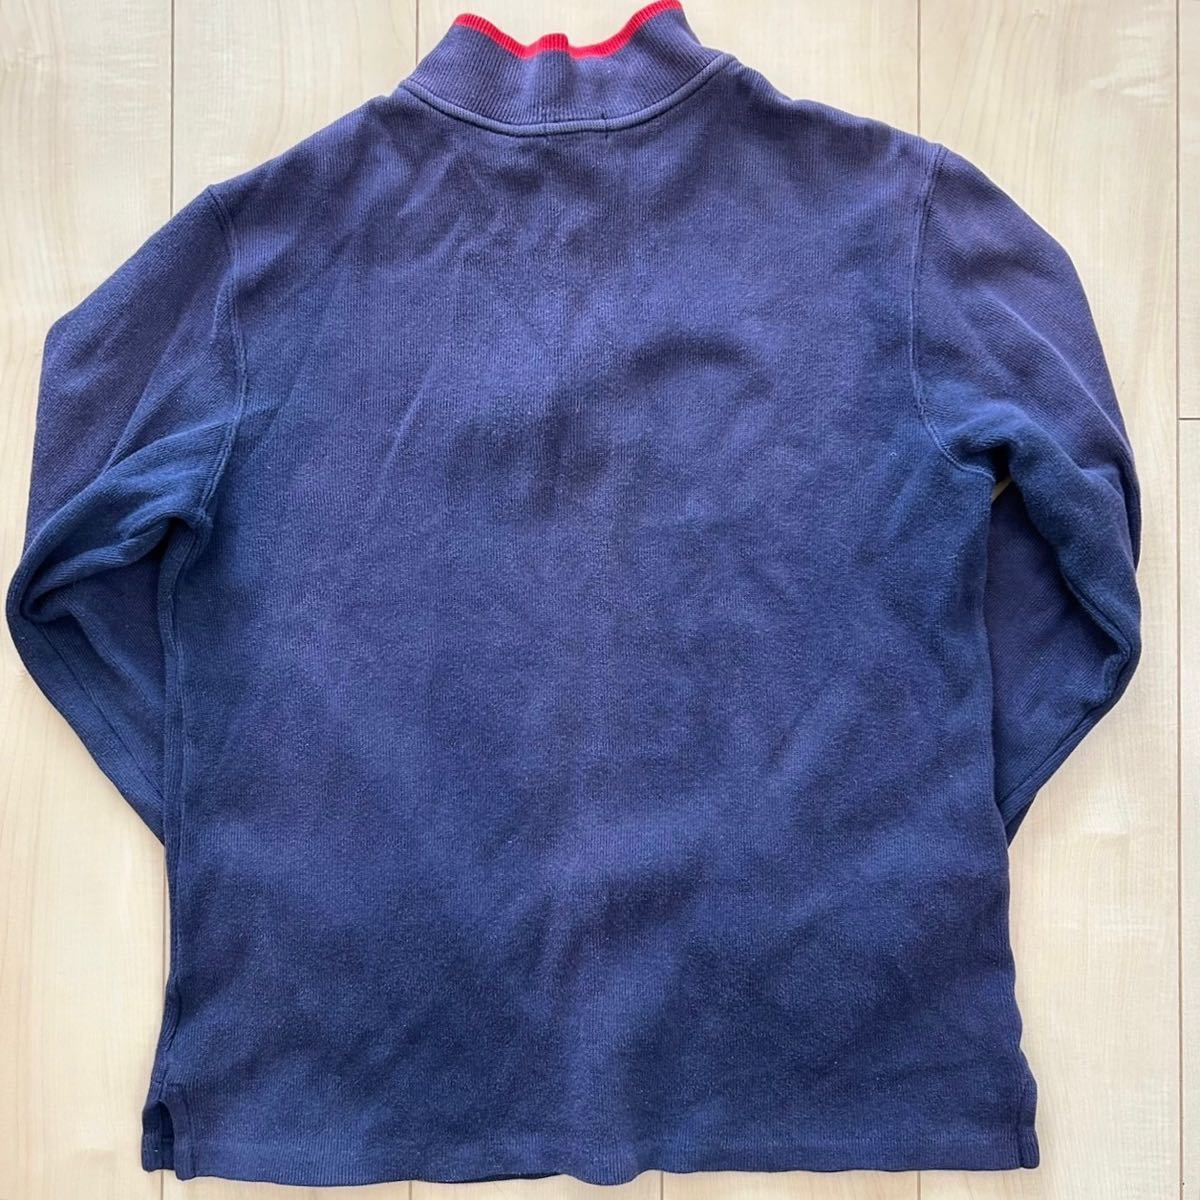 POLO RALPH LAUREN Polo Ralph Lauren половина Zip длинный рукав тренировочный футболка темно-синий женский XL размер вышивка Logo 